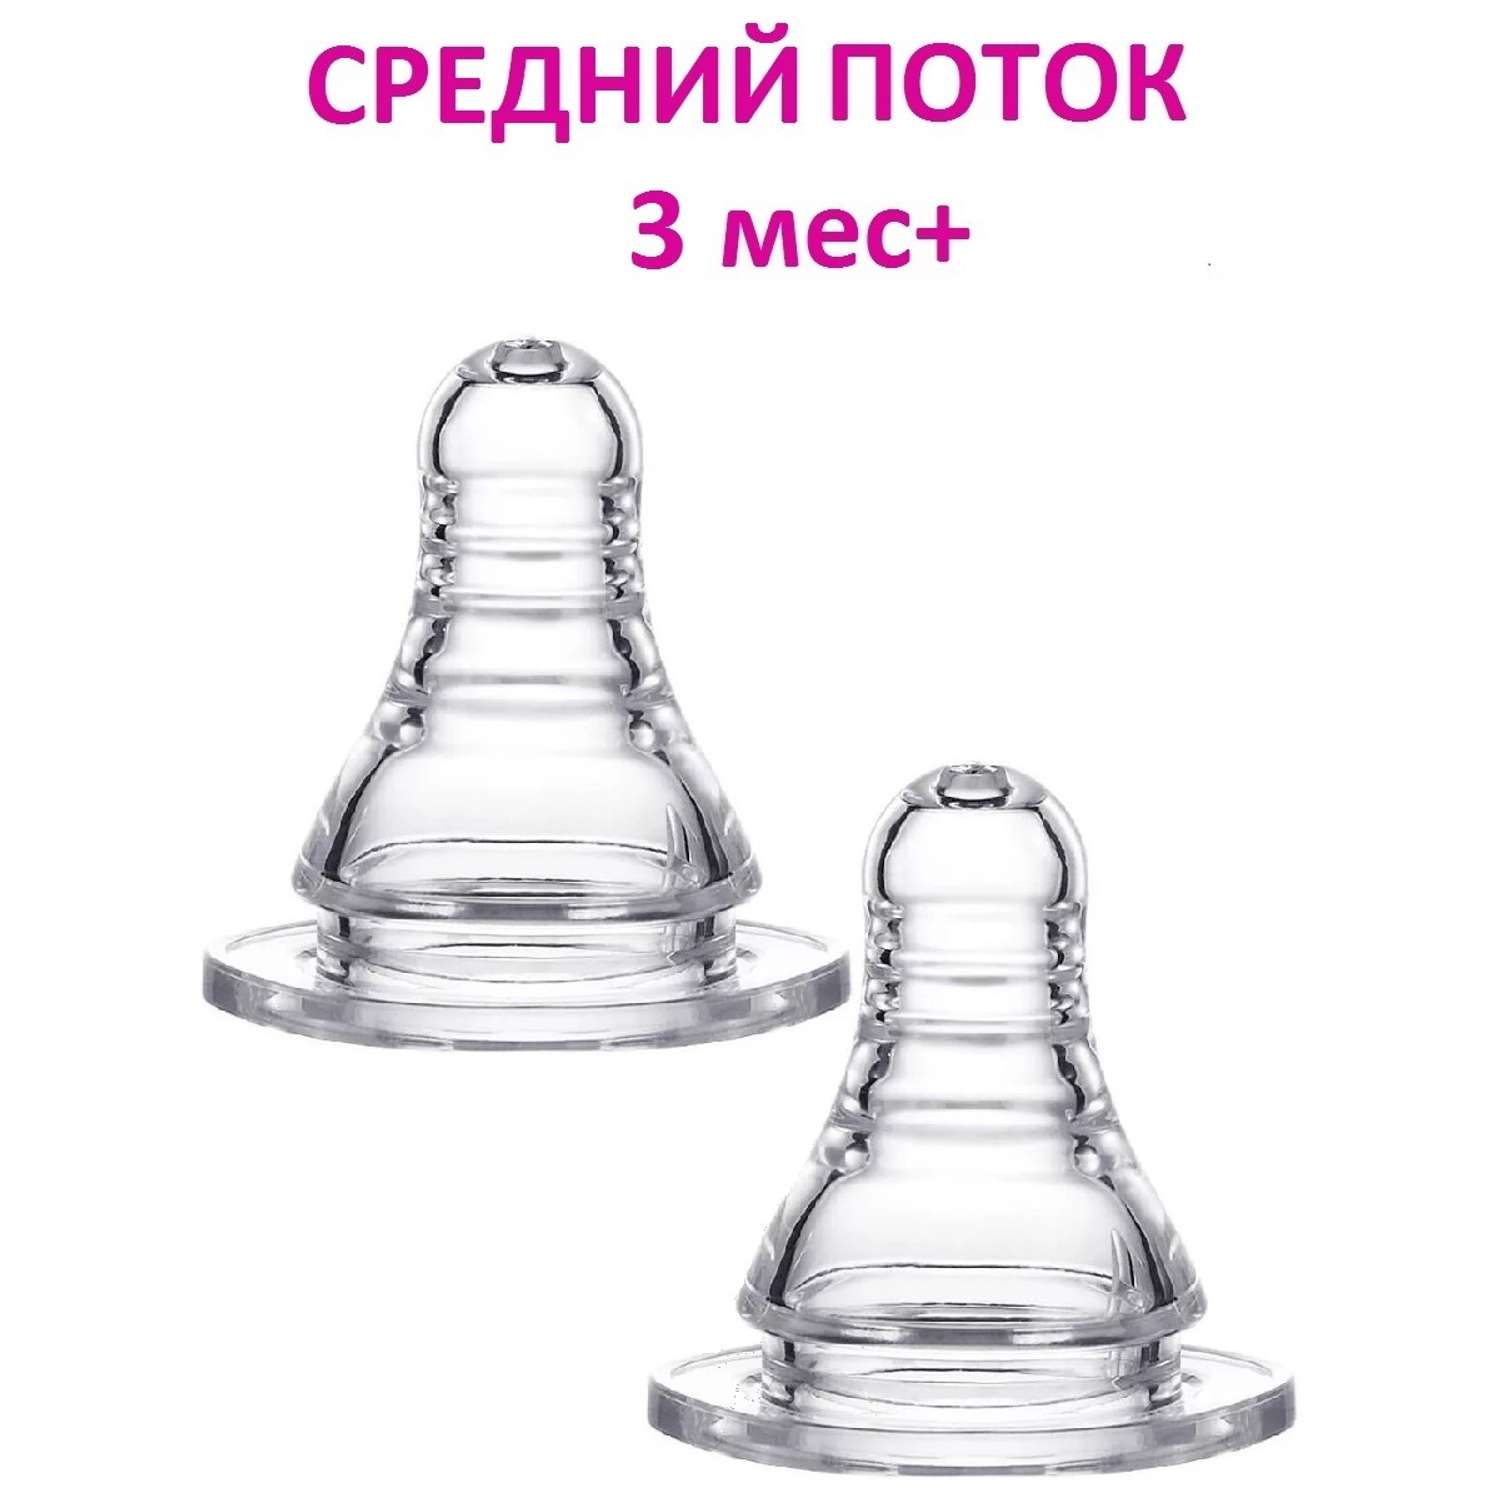 Соска для бутылочки NDCG со средним потоком mother care 3 мес+ 2 шт - фото 1